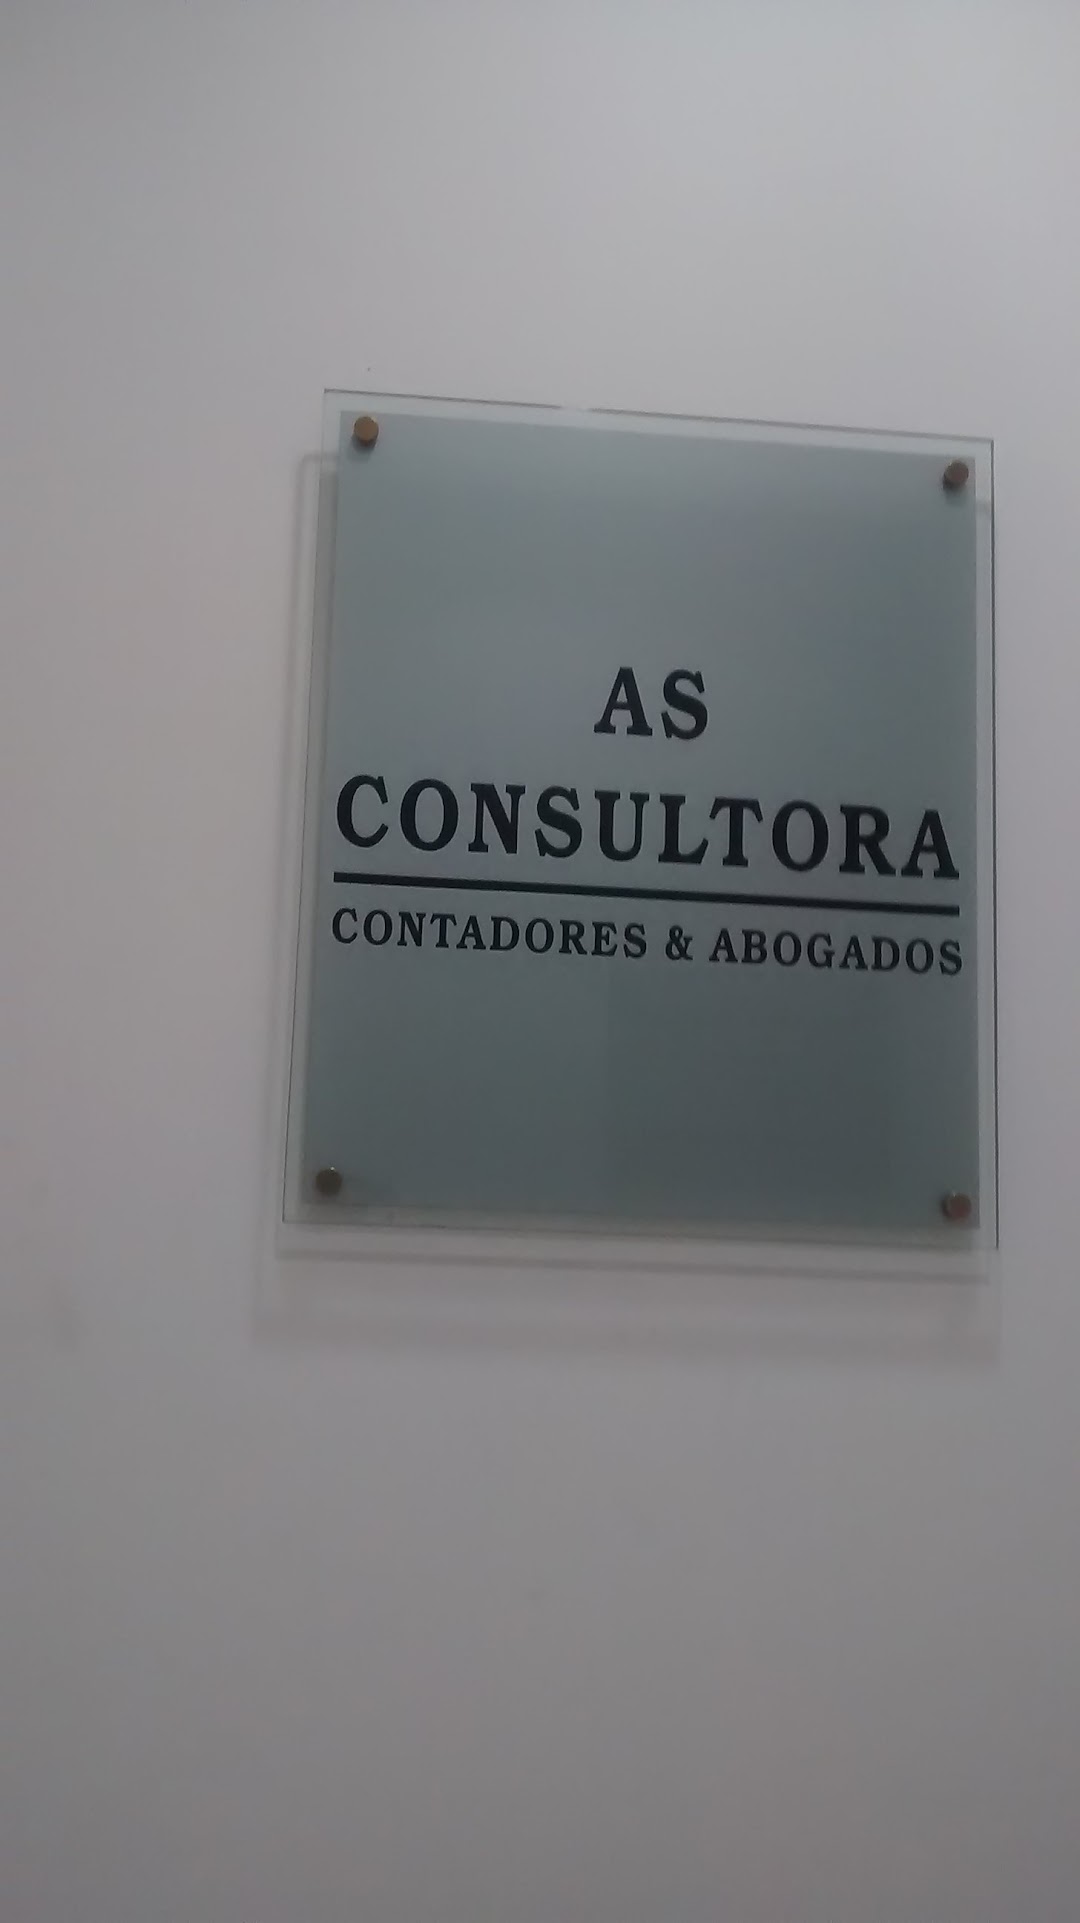 AS CONSULTORA - Contadores & Abogados